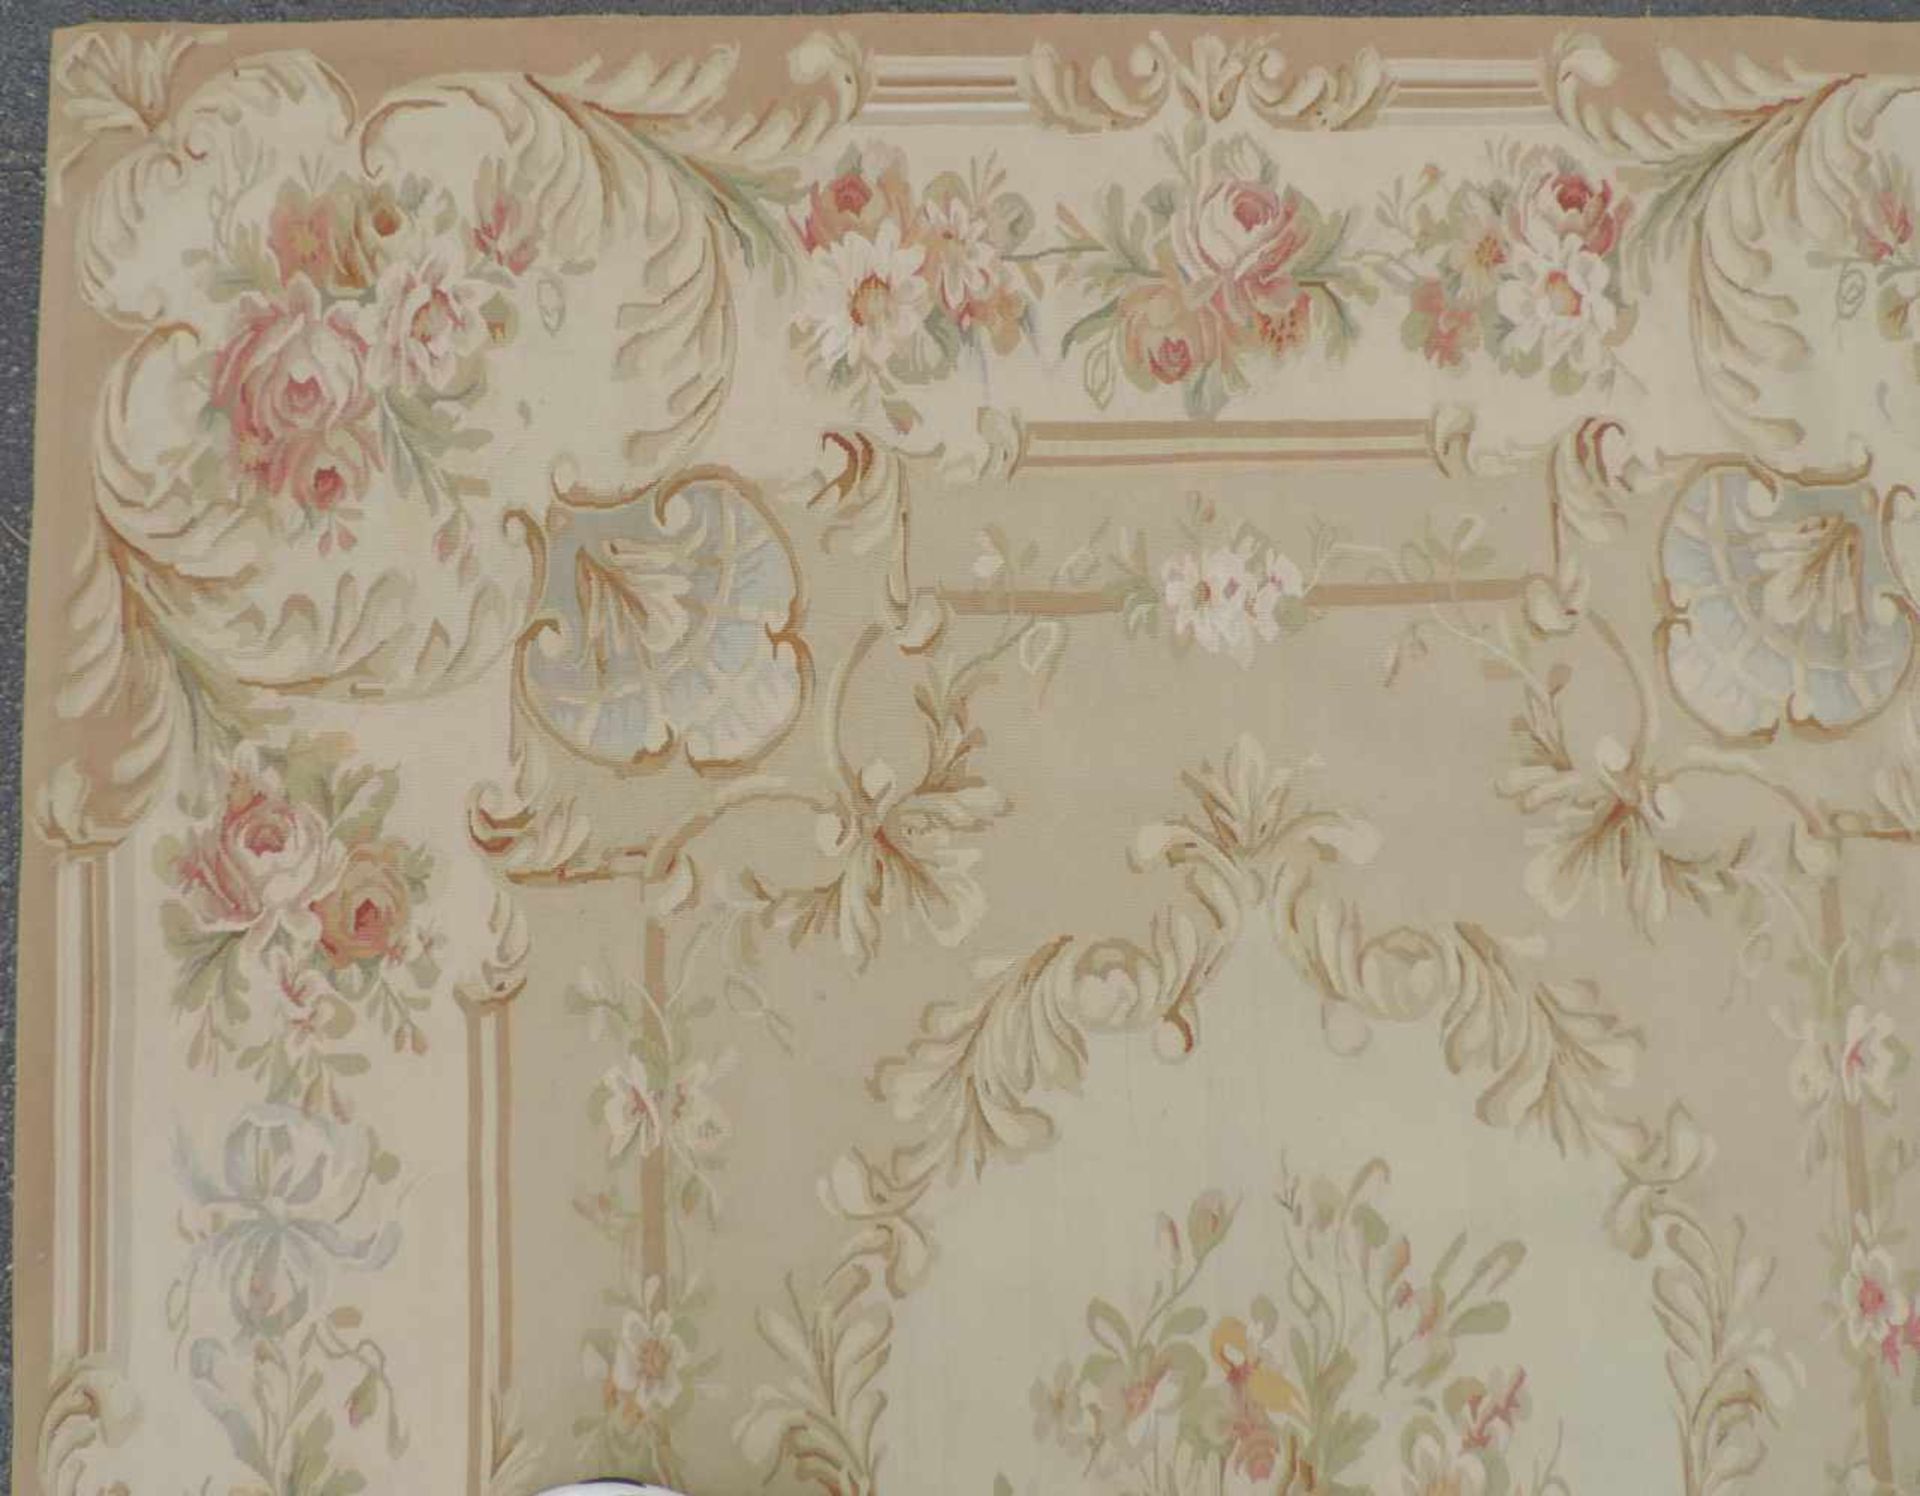 Tapis de Pied "Aubusson". Salonteppich.275 cm x 188 cm. Handgewebt. Wolle auf Wolle.Tapis de Pied " - Image 9 of 10